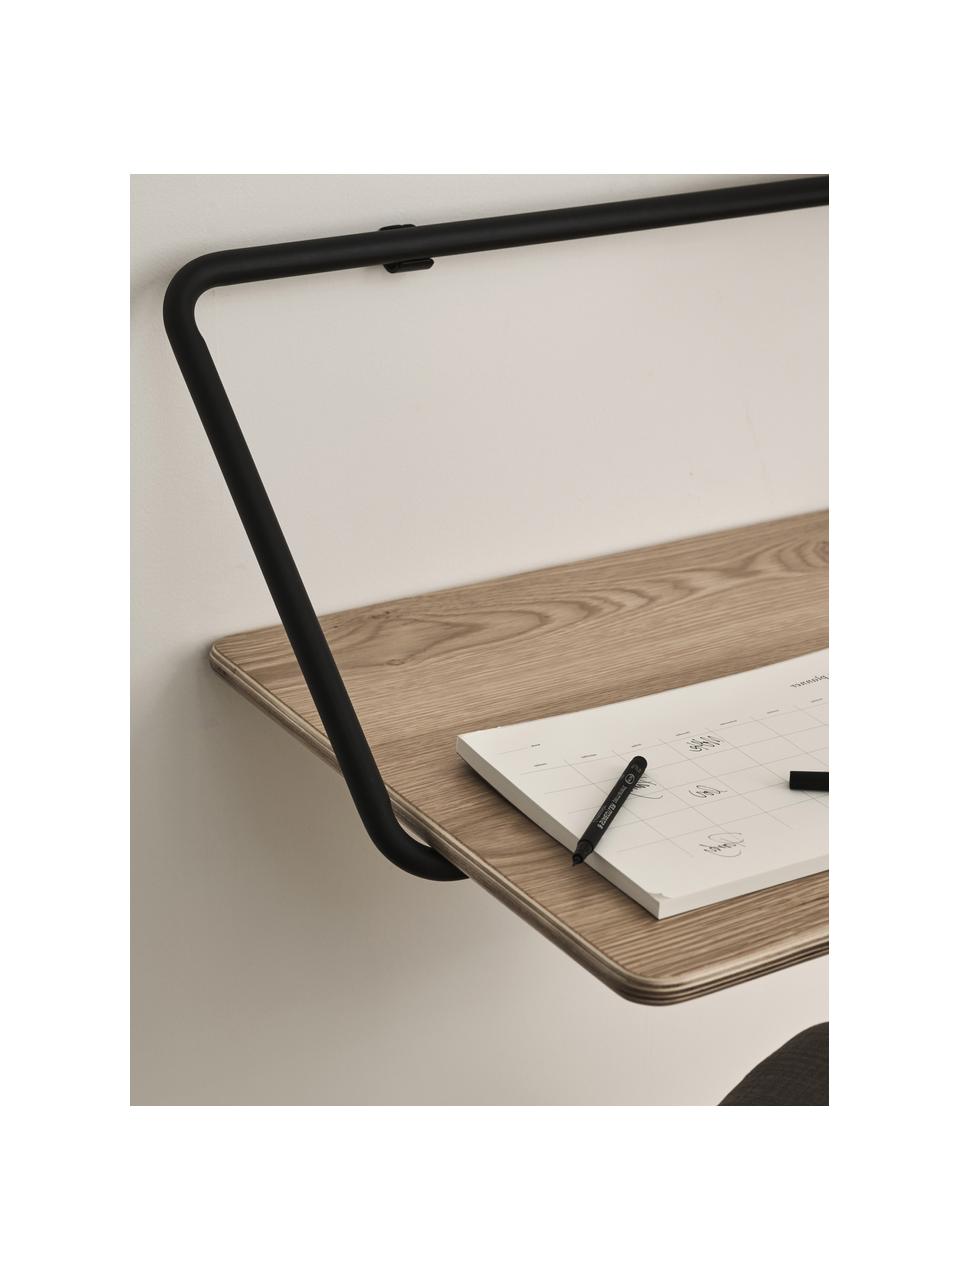 Wand-Schreibtisch Penny aus Holz, Tischplatte: Sperrholz, Eschenholzfurn, Rahmen: Metall, pulverbeschichtet, Holz, Schwarz, B 100 x T 50 cm